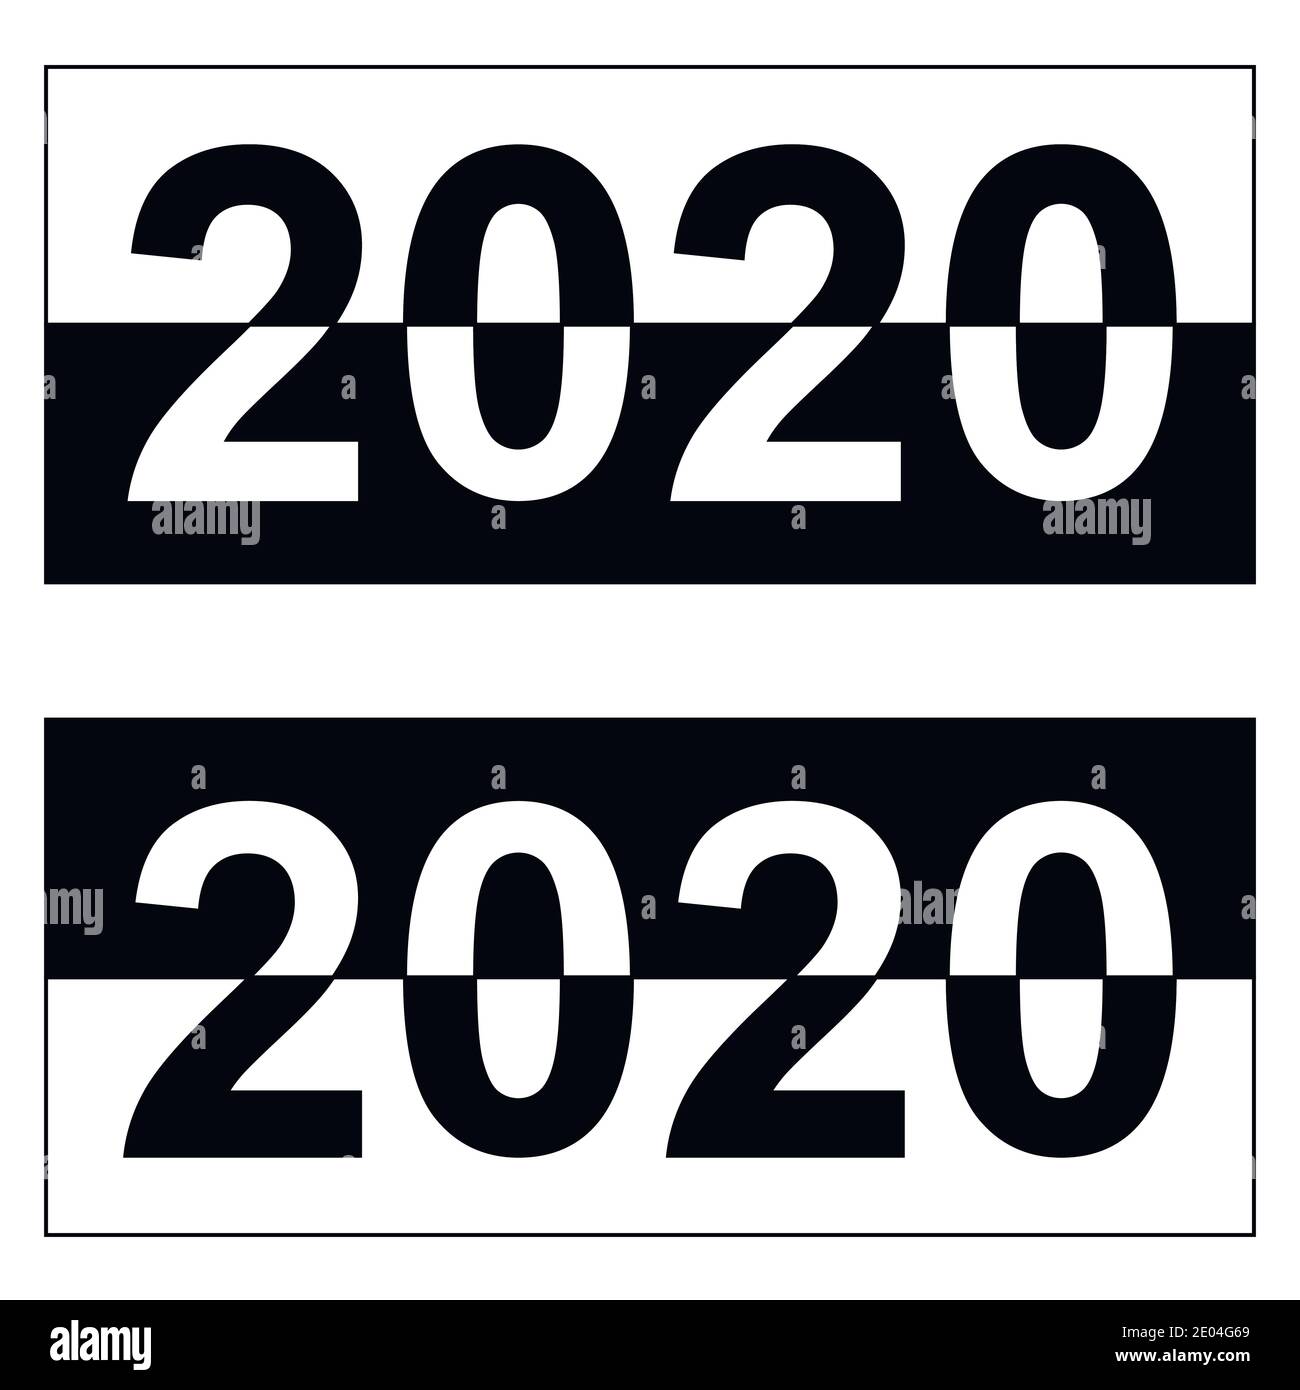 Feliz año nuevo 2020, blanco y negro pancarta monocromo, fecha de dígito vectorial para el año 2020 la distribución de los colores blanco y negro Ilustración del Vector